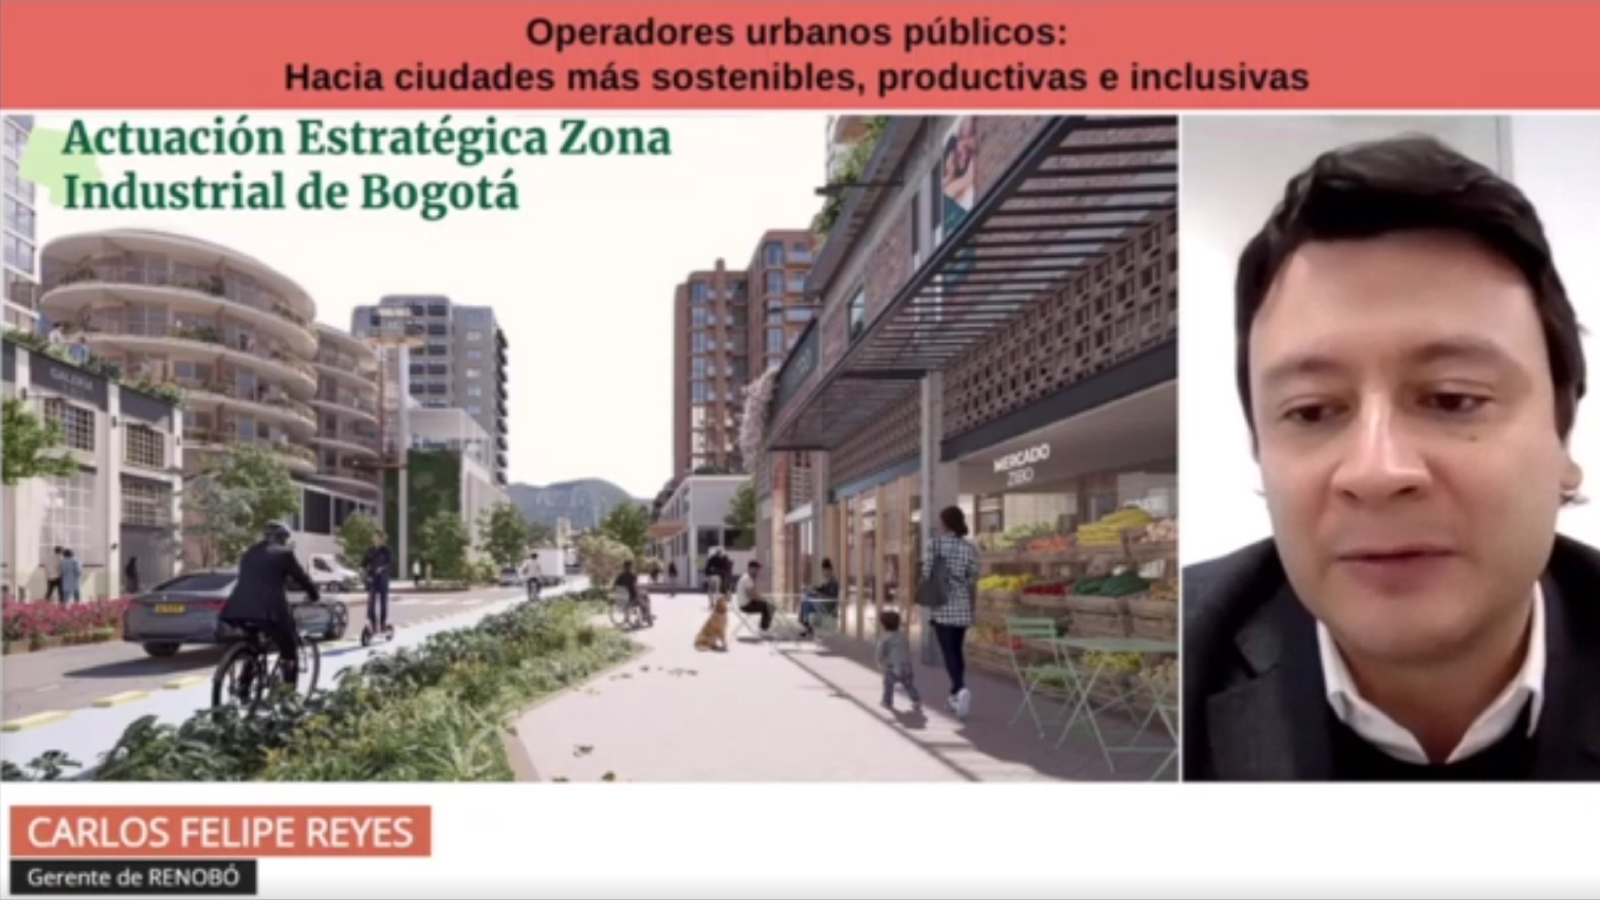 Bogotá expuso ante ciudades de América Latina y el Caribe el rol de RenoBo como operador urbano para alcanzar un desarrollo urbano sostenible e inclusivo